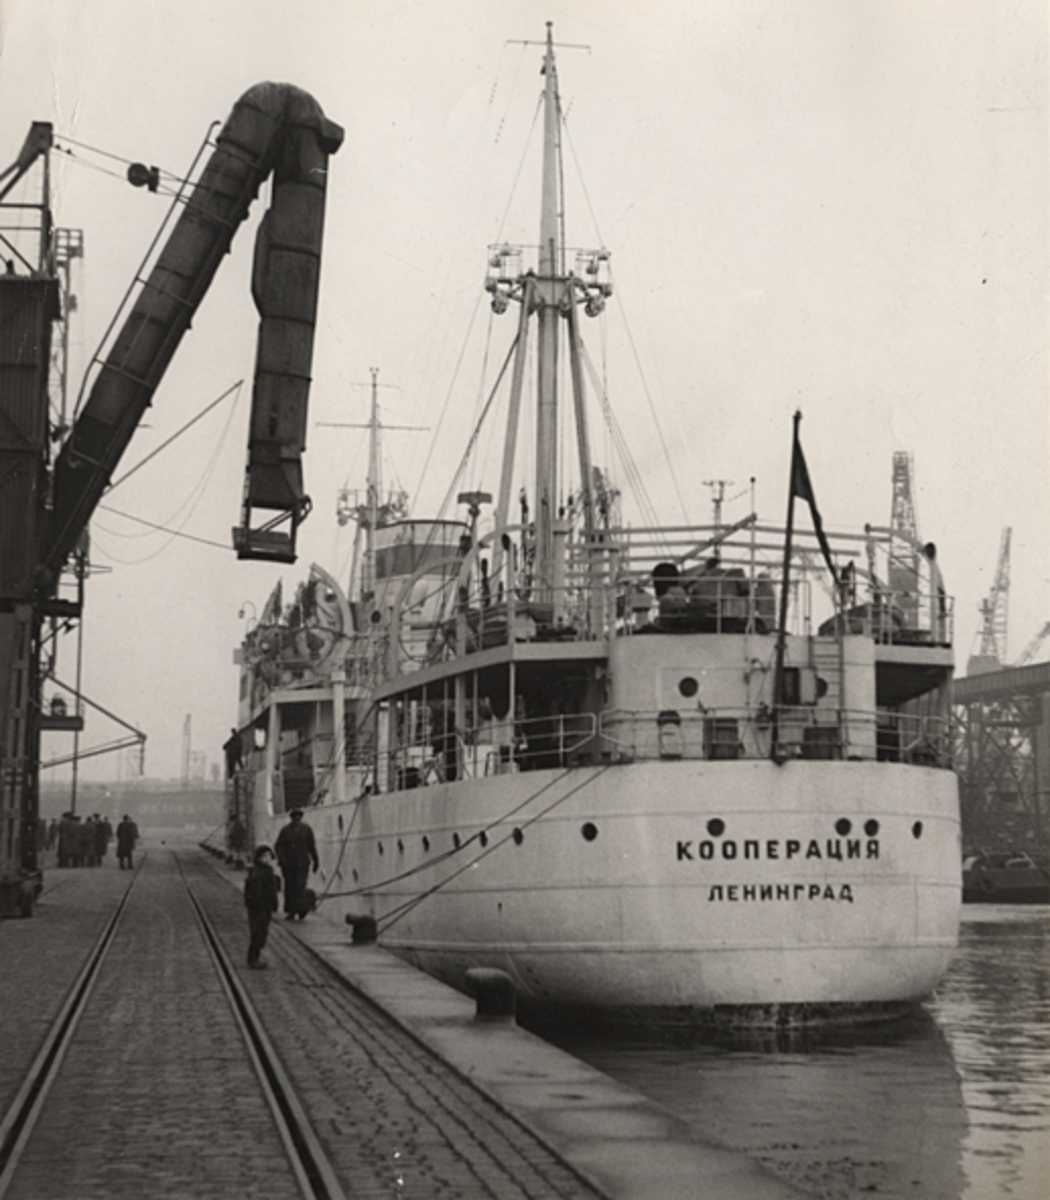 Det ryska lastfartyget COOPERATZIA i Malmö hamn 1953.